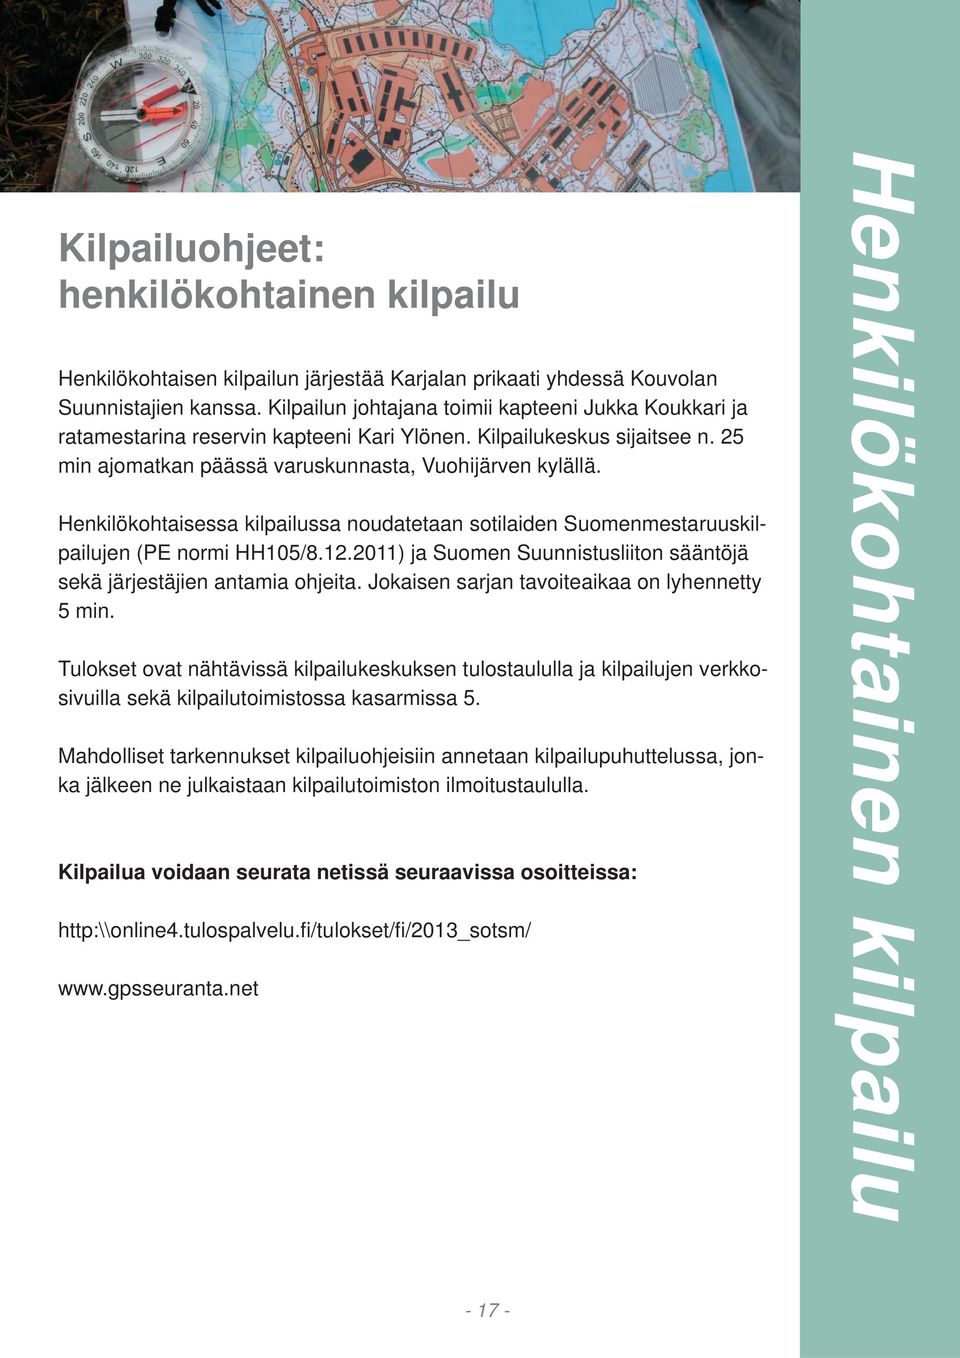 Henkilökohtaisessa kilpailussa noudatetaan sotilaiden Suomenmestaruuskilpailujen (PE normi HH105/8.12.2011) ja Suomen Suunnistusliiton sääntöjä sekä järjestäjien antamia ohjeita.